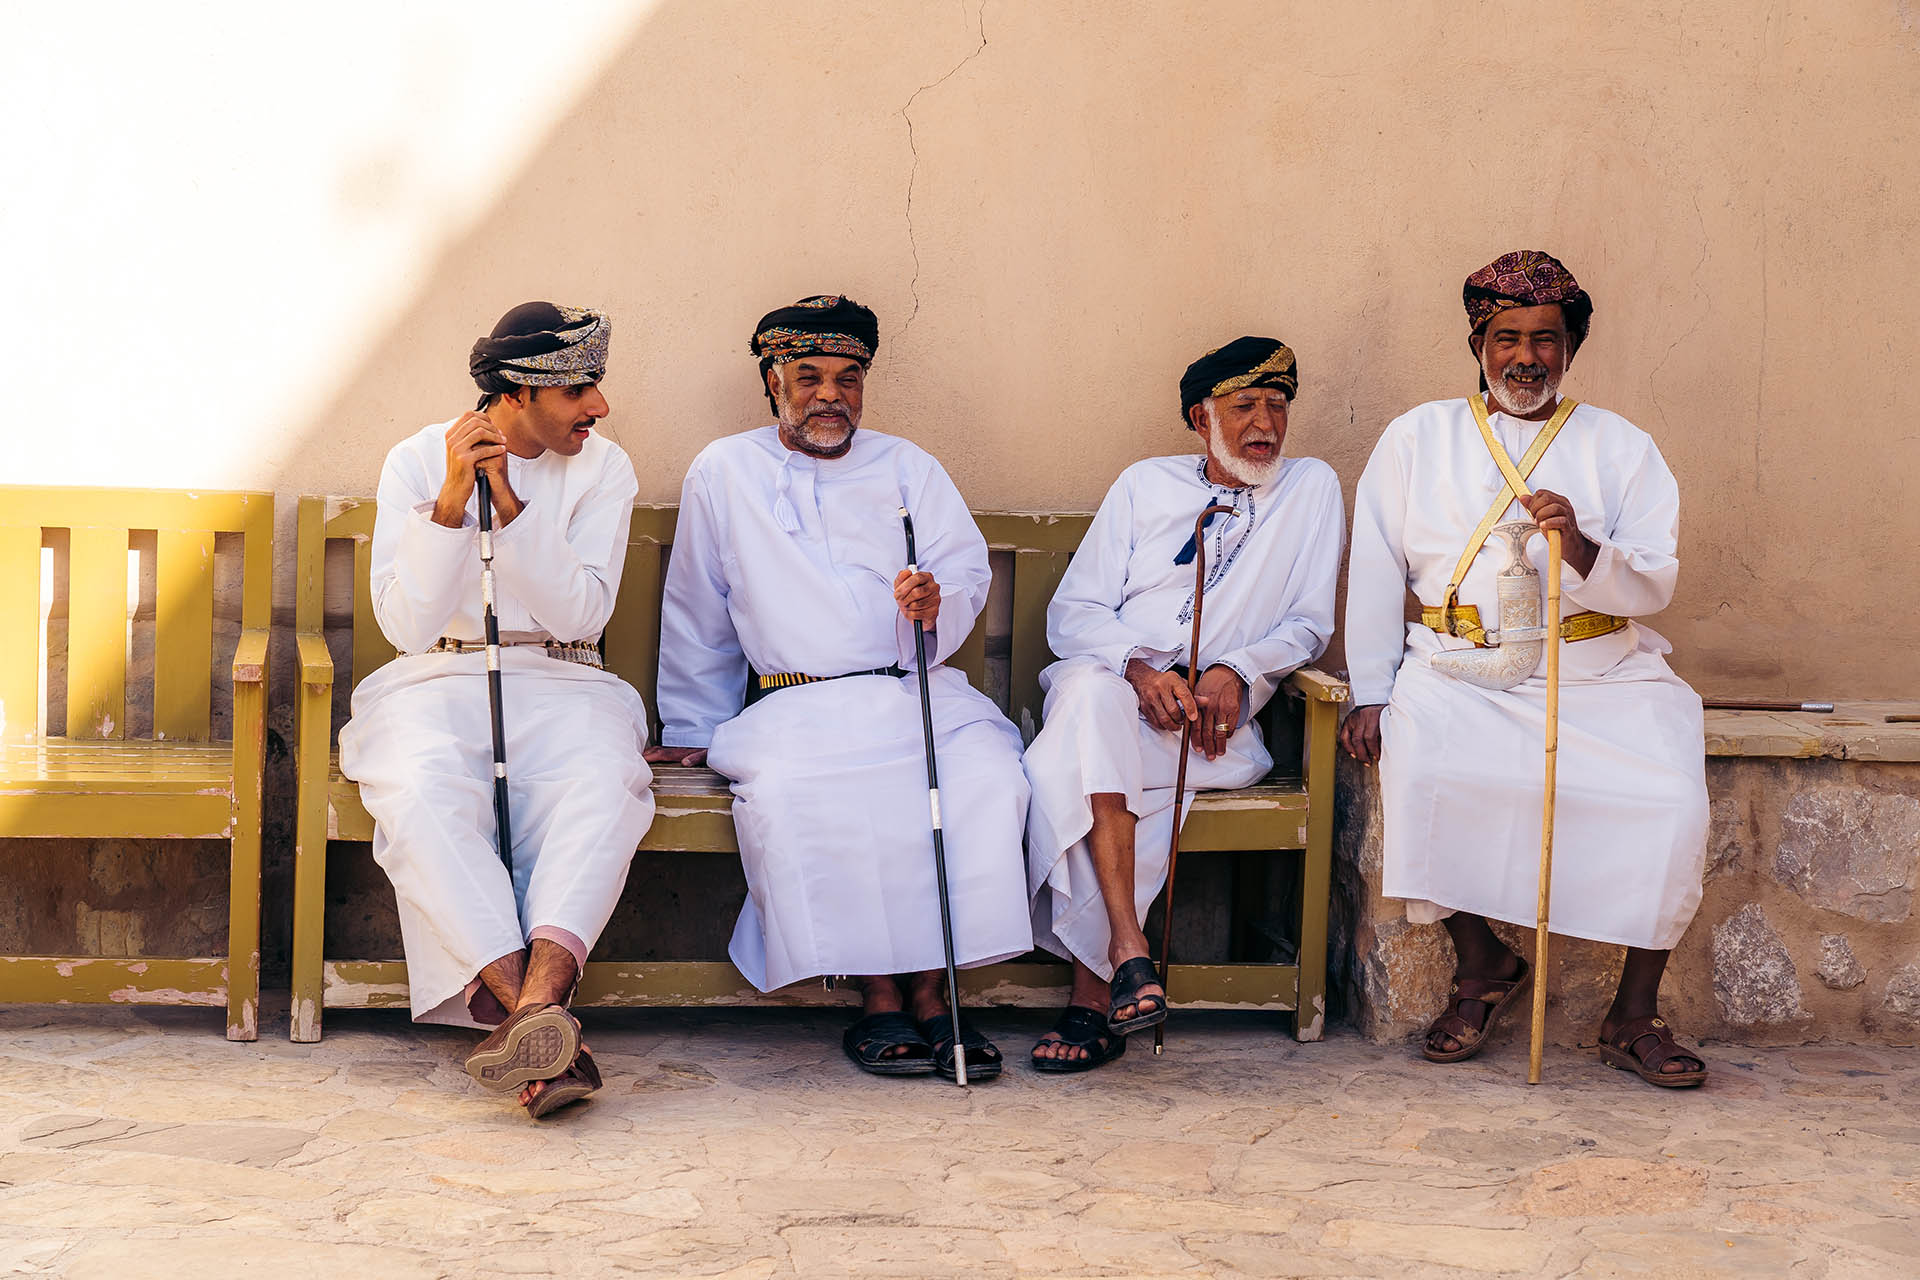 vier traditioneel geklede mannen in Oman op een bankje